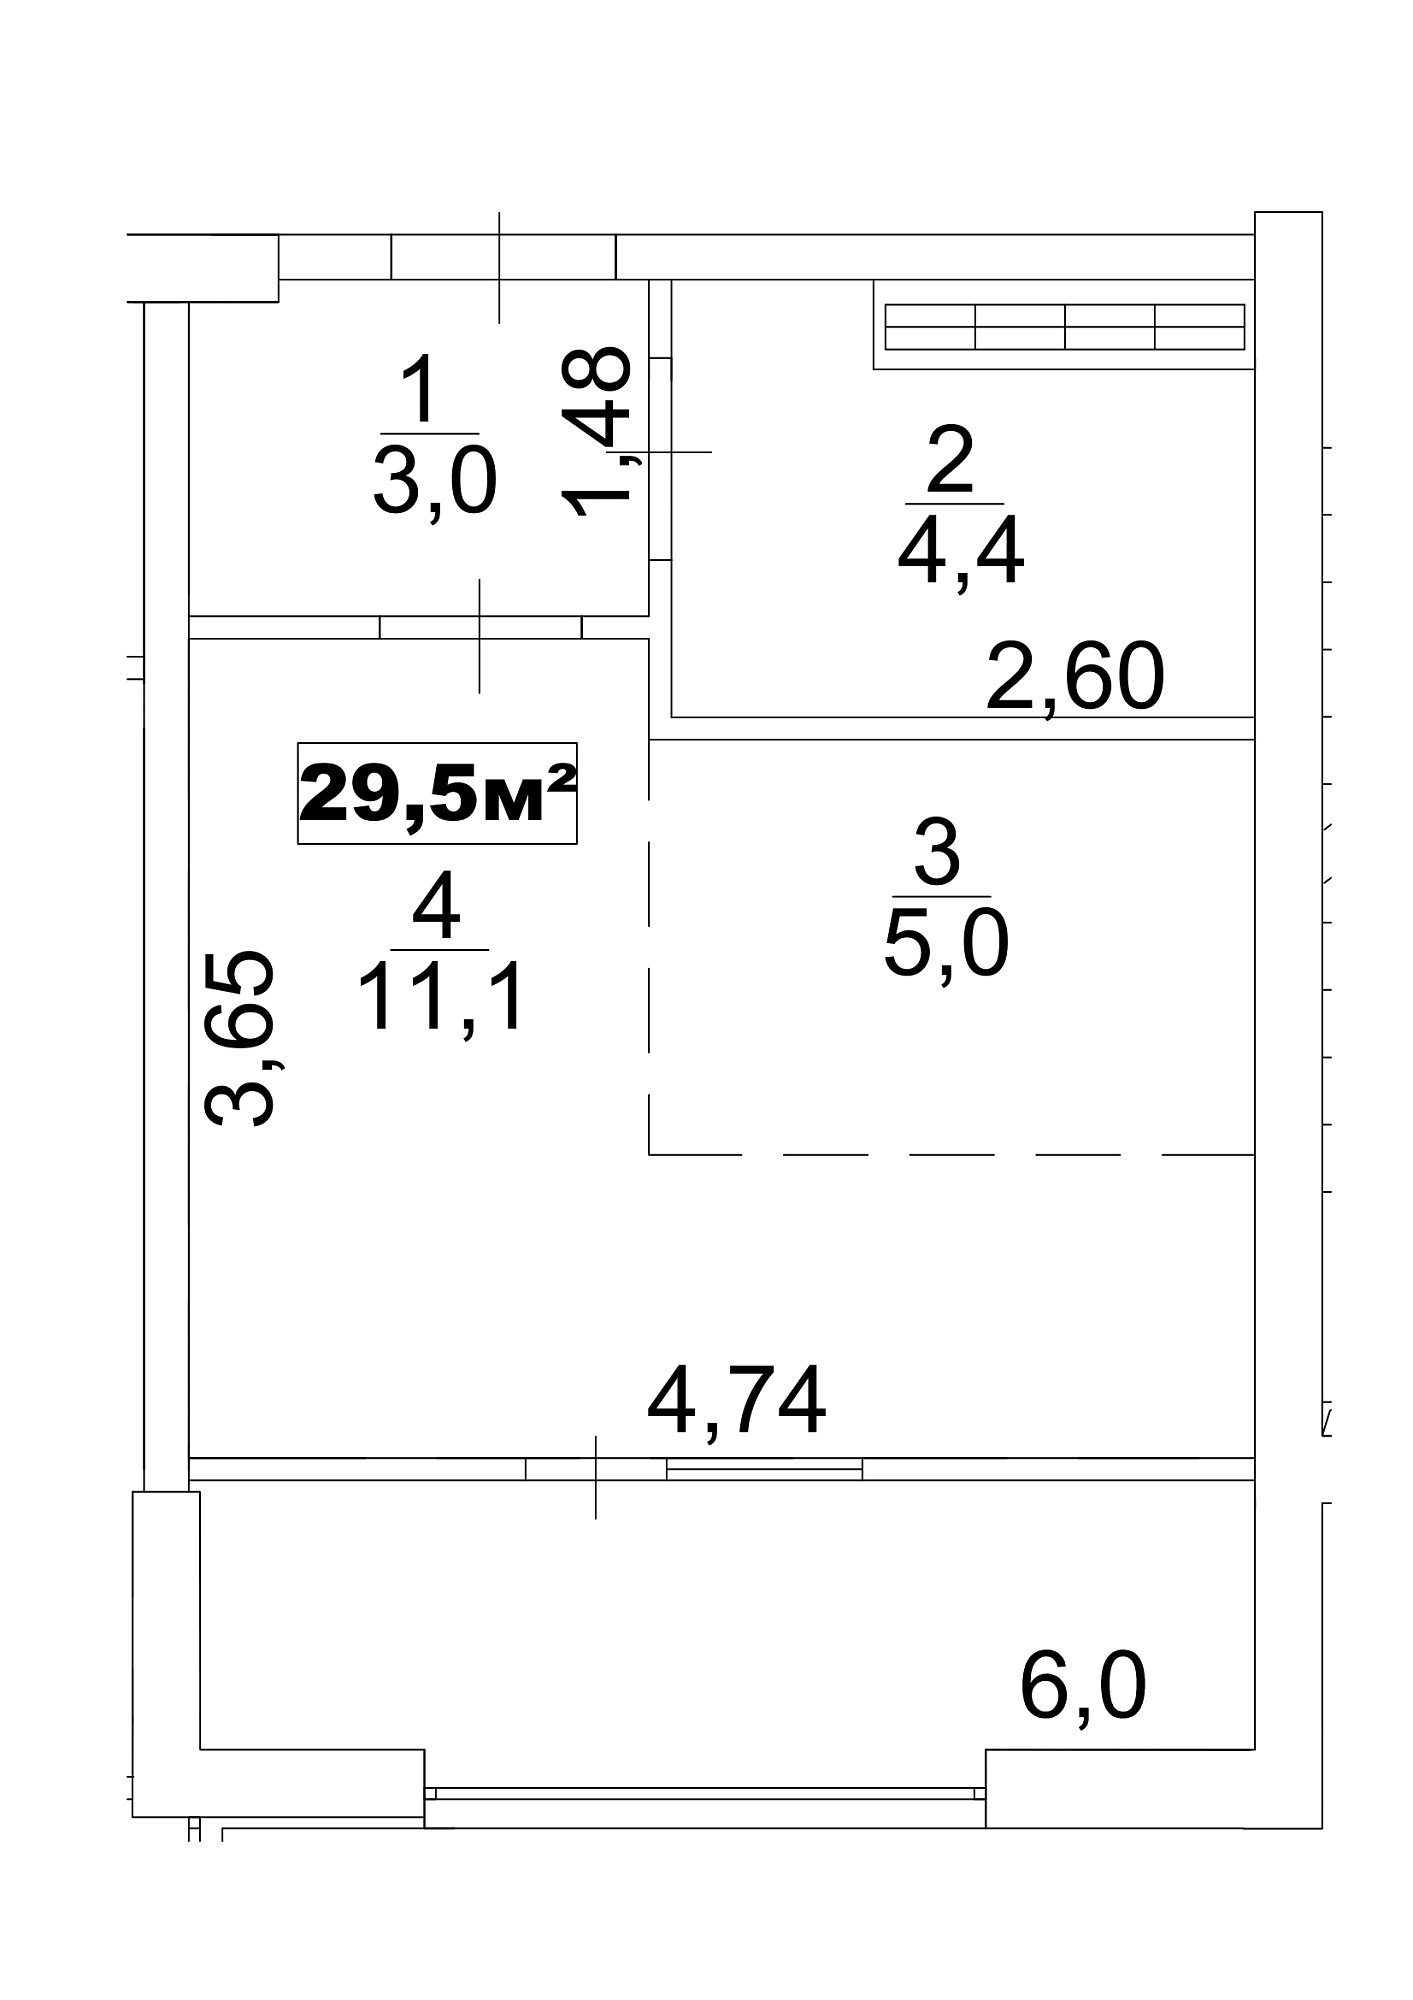 Планировка Smart-квартира площей 29.5м2, AB-13-03/0016а.